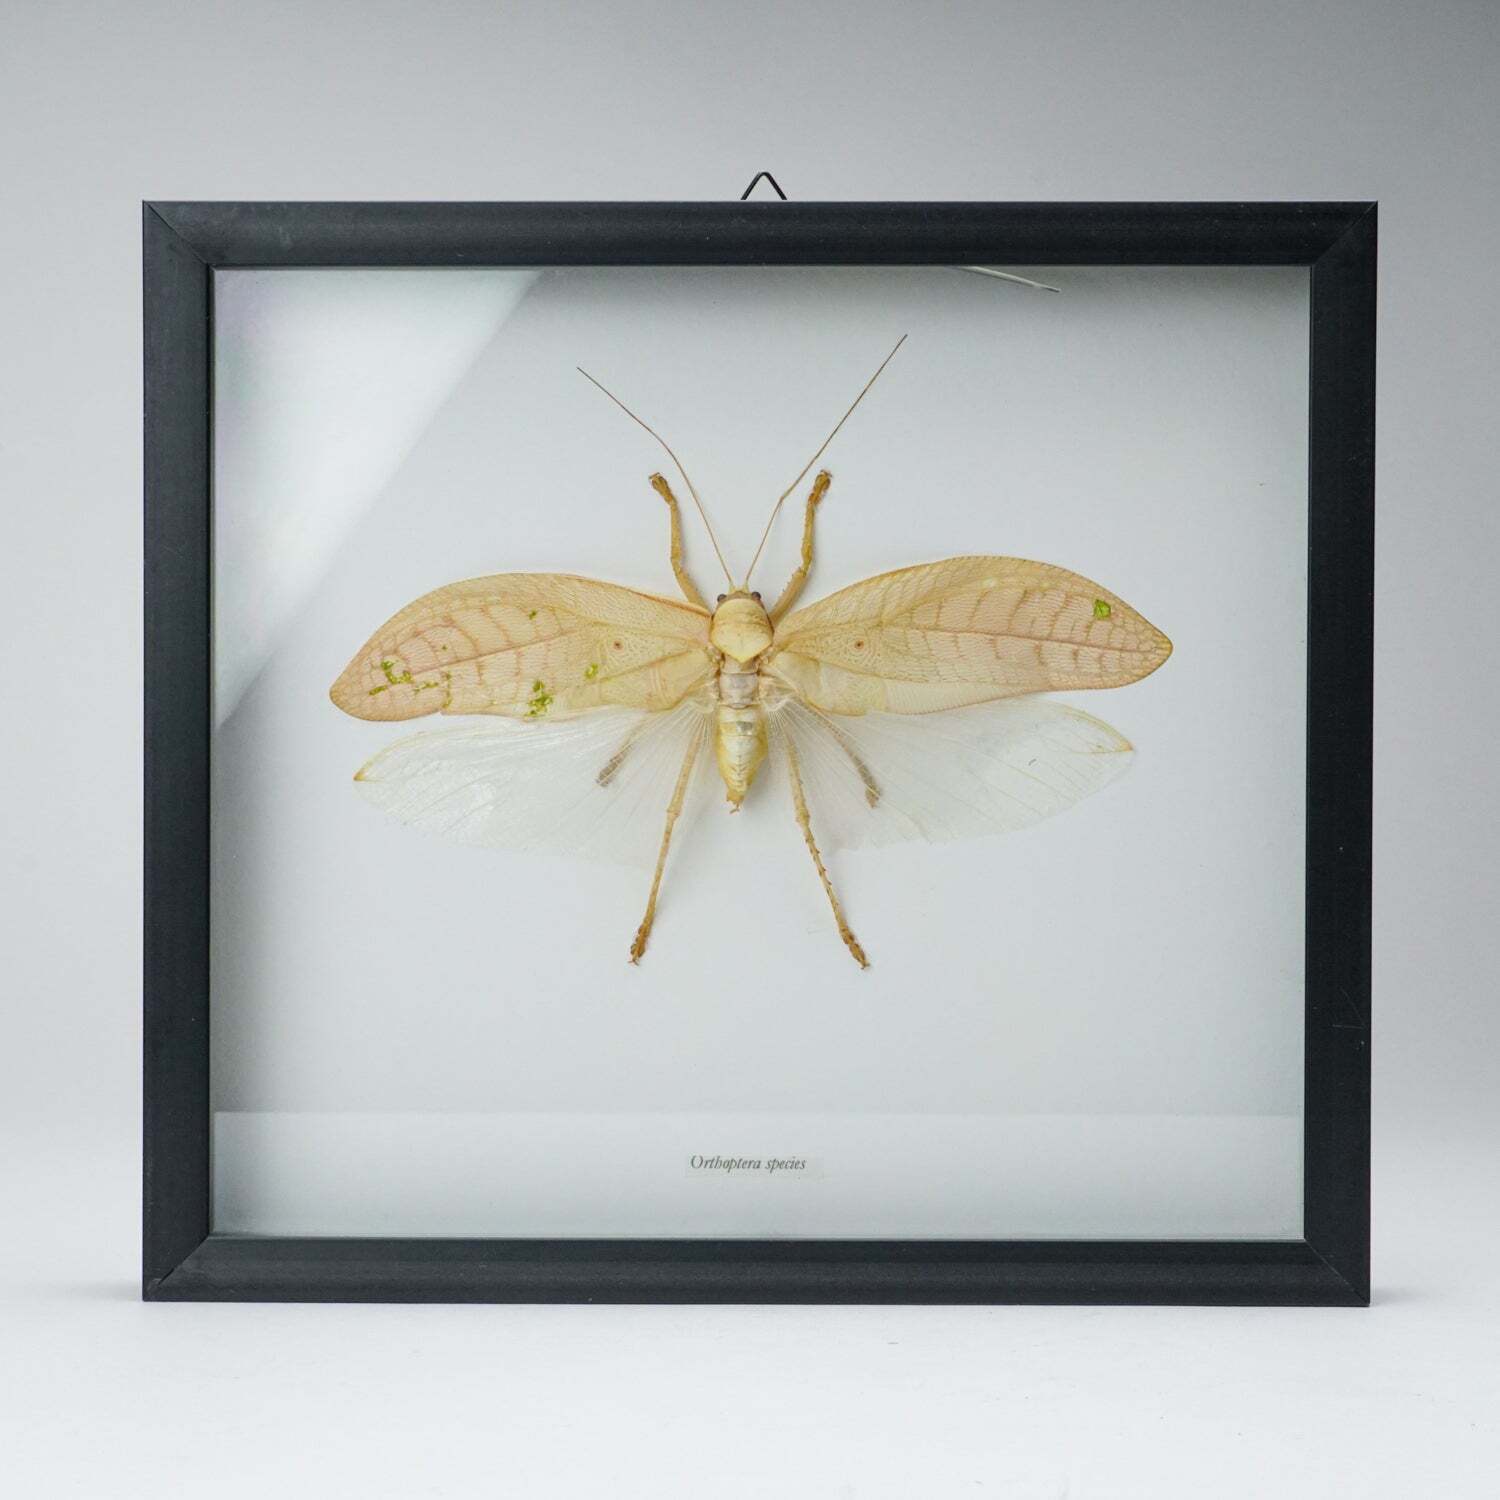 Genuine Orthoptera Species in Display frame